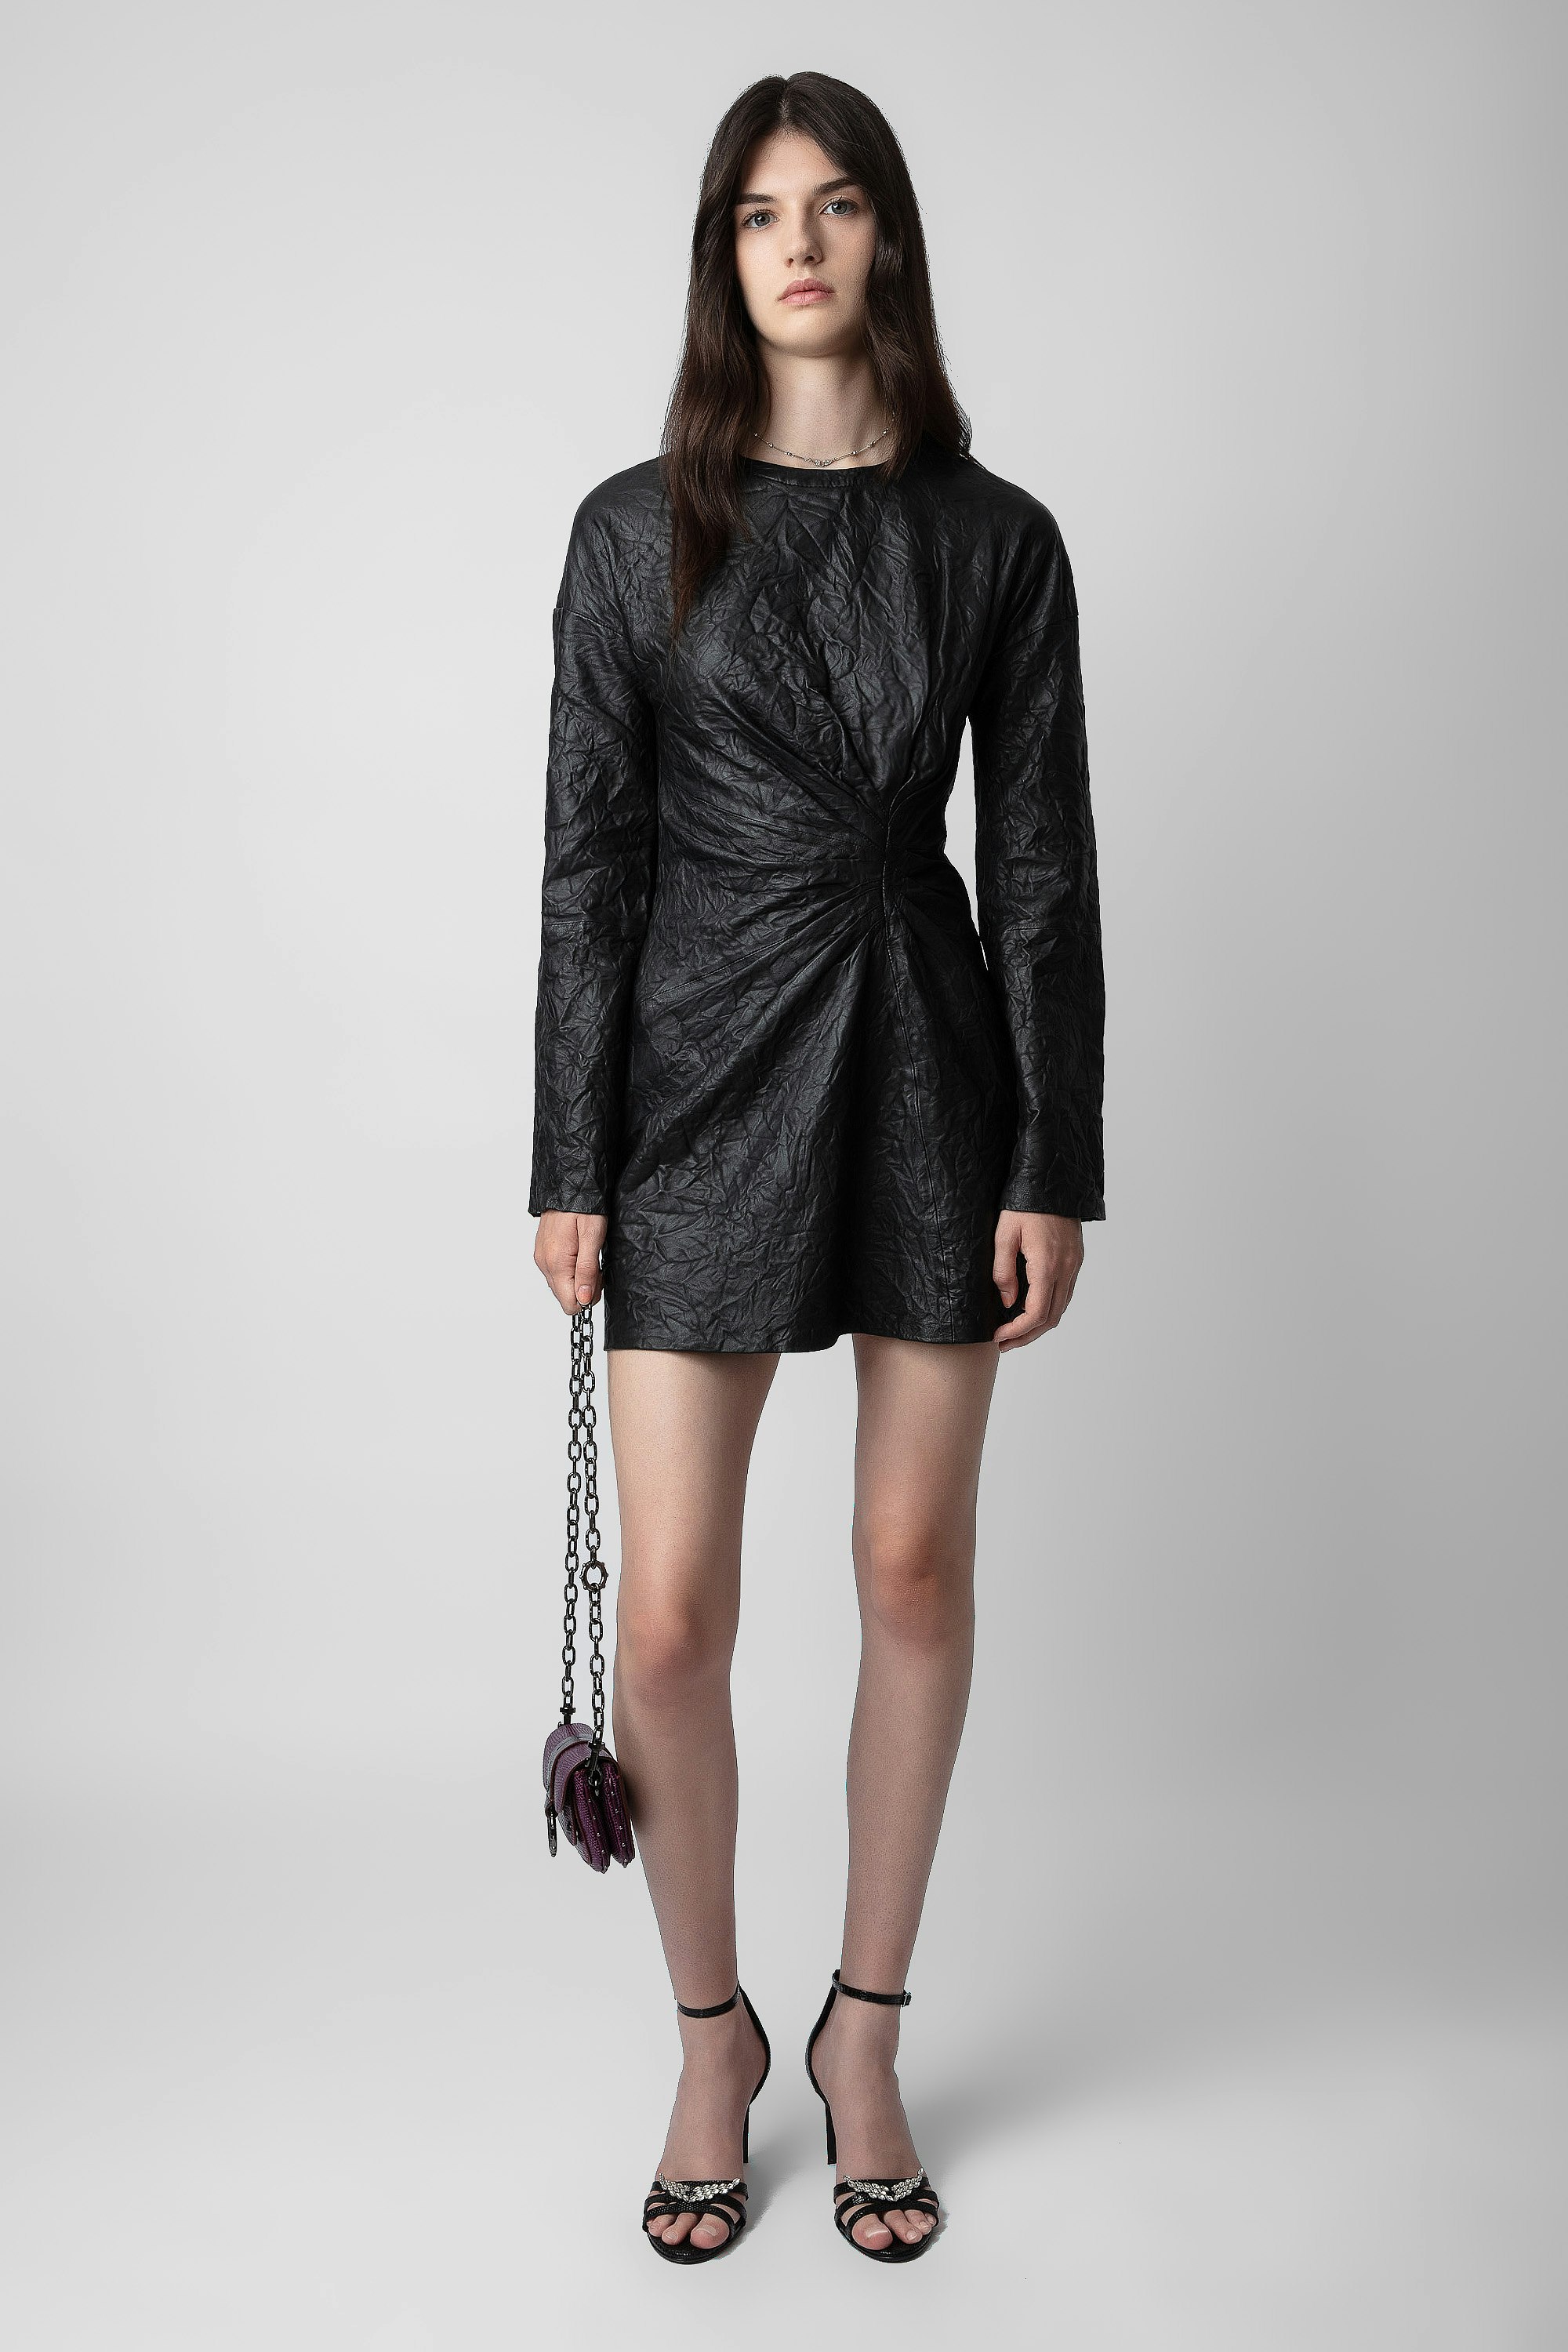 Robe Rixina Cuir Froissé - Robe courte en cuir froissé noir effet noué.